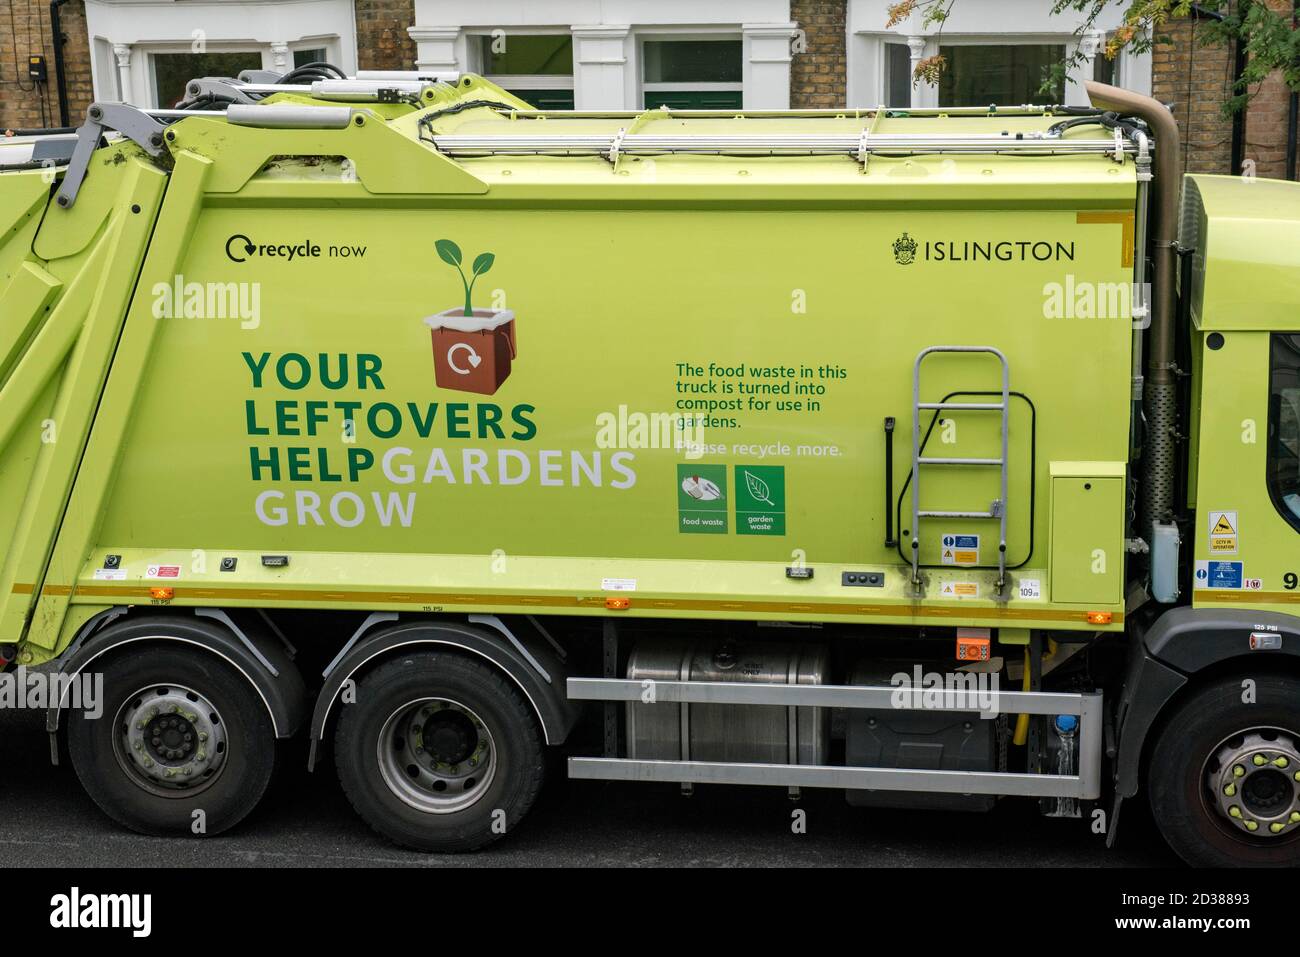 Camion de recyclage avec texte sur le côté encourageant les gens à recycler Nourriture et déchets verts pour faire du compost - vos restes Aidez Gardens Grow - Islington Banque D'Images